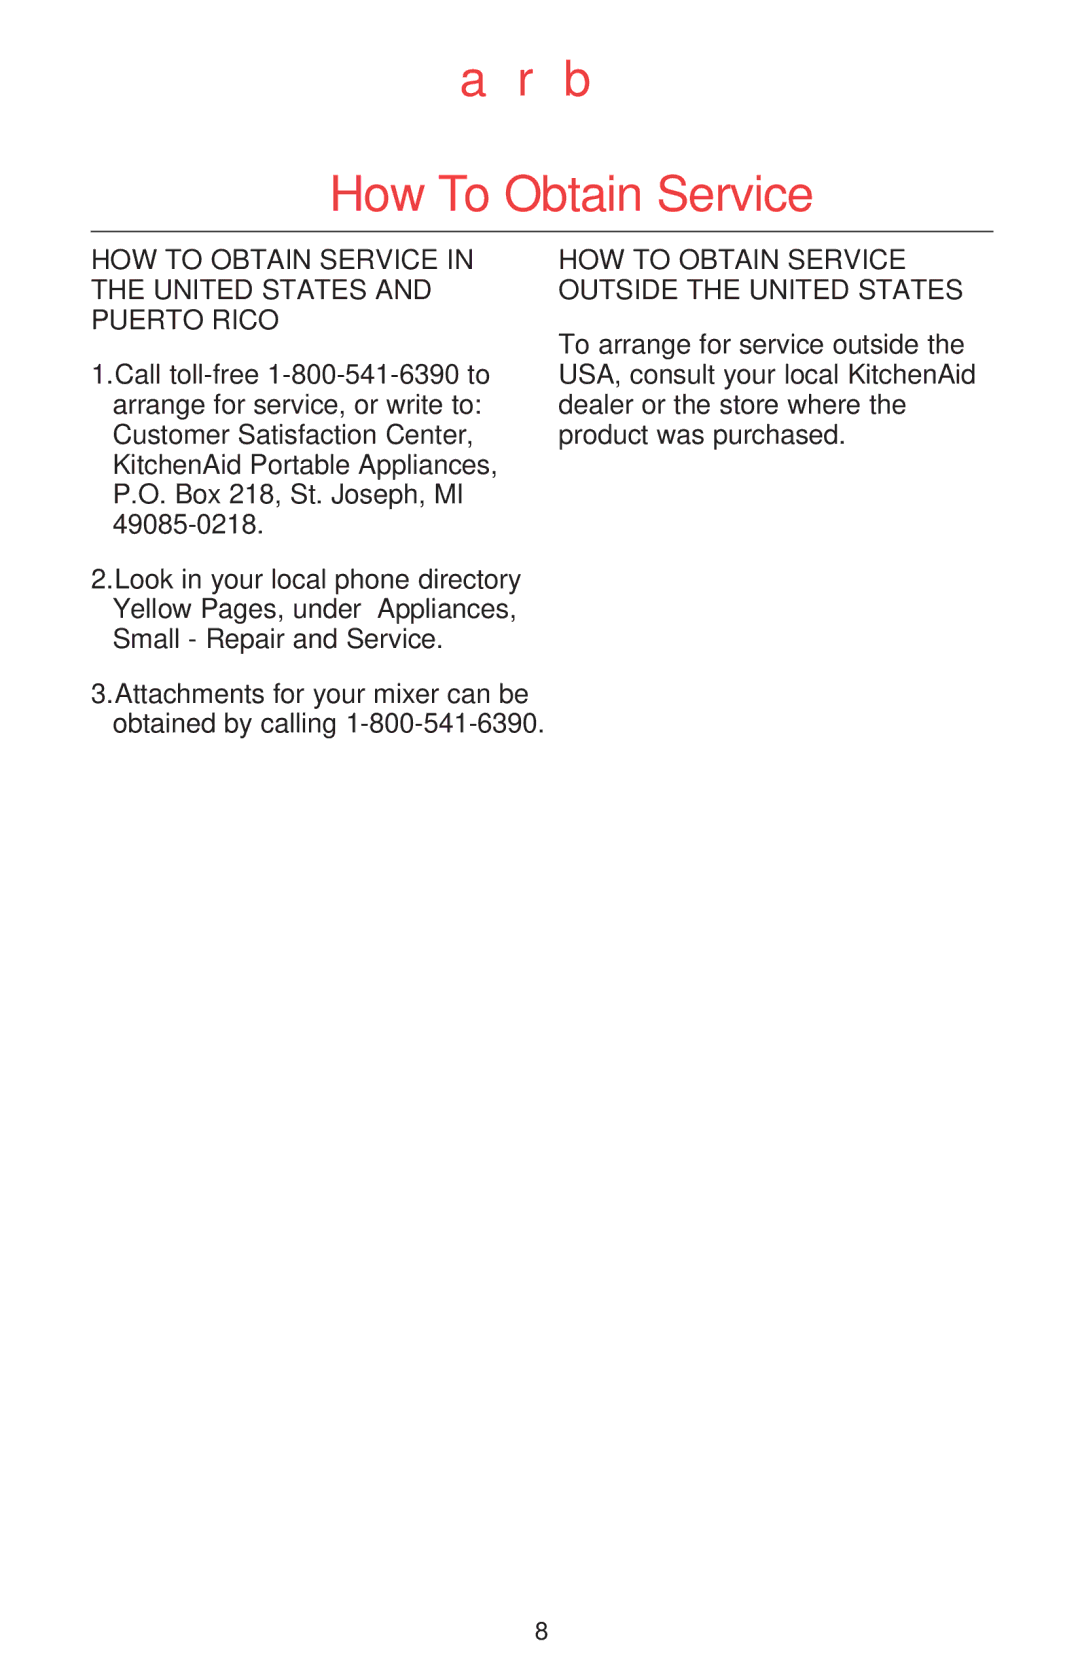 KitchenAid Mixer manual How To Obtain Service, HOW to Obtain Service in the United States and Puerto Rico 